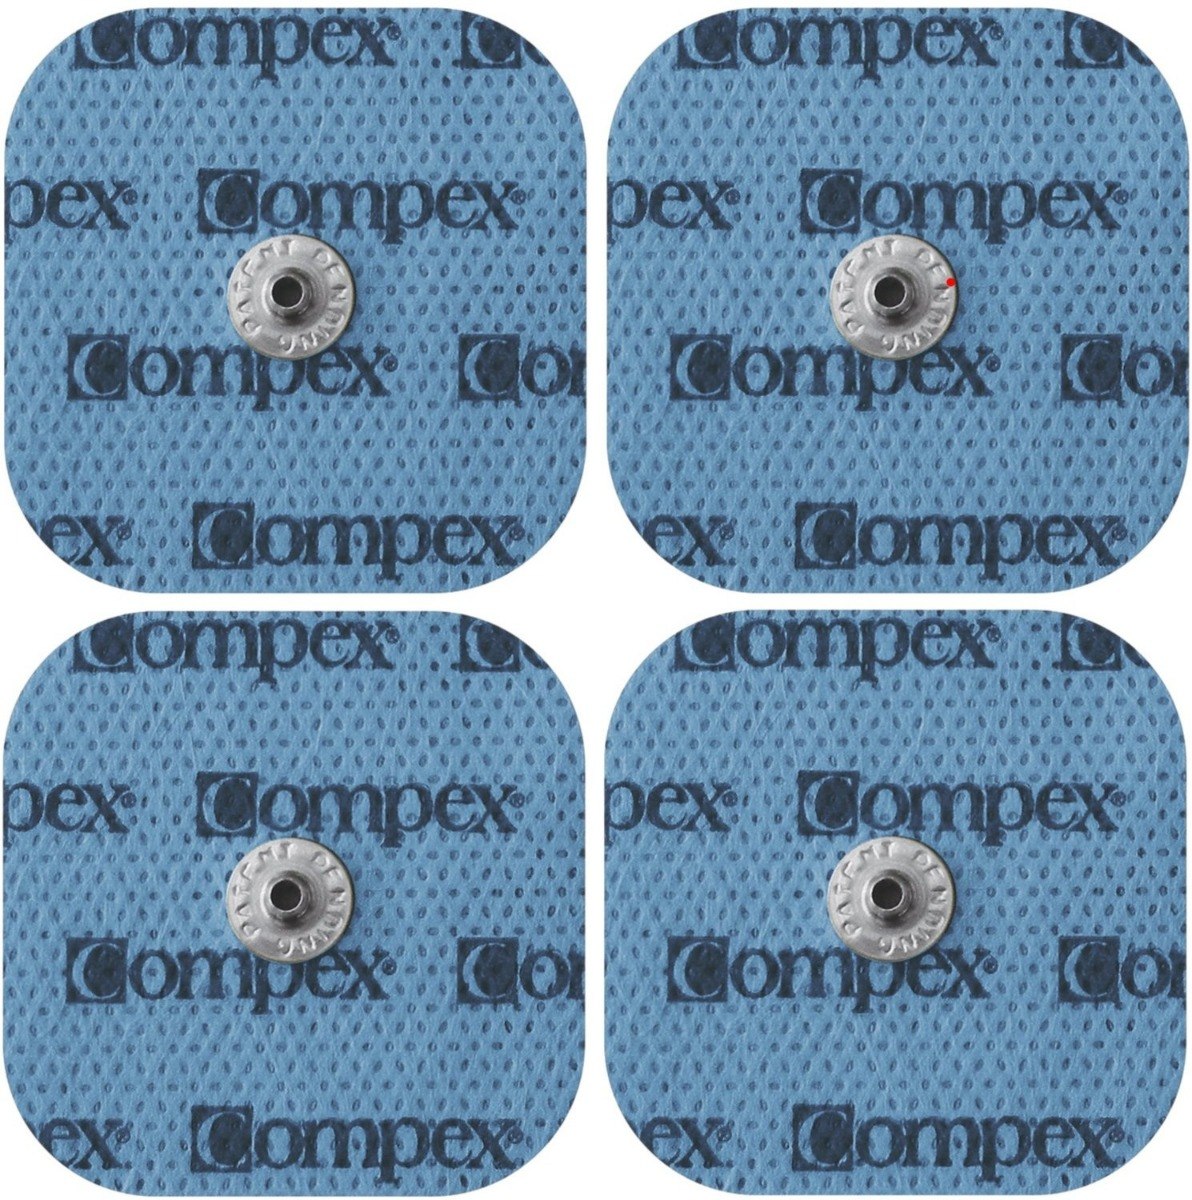 Electrodos Compex Easy Snap 5x5 - Compex Sudamérica